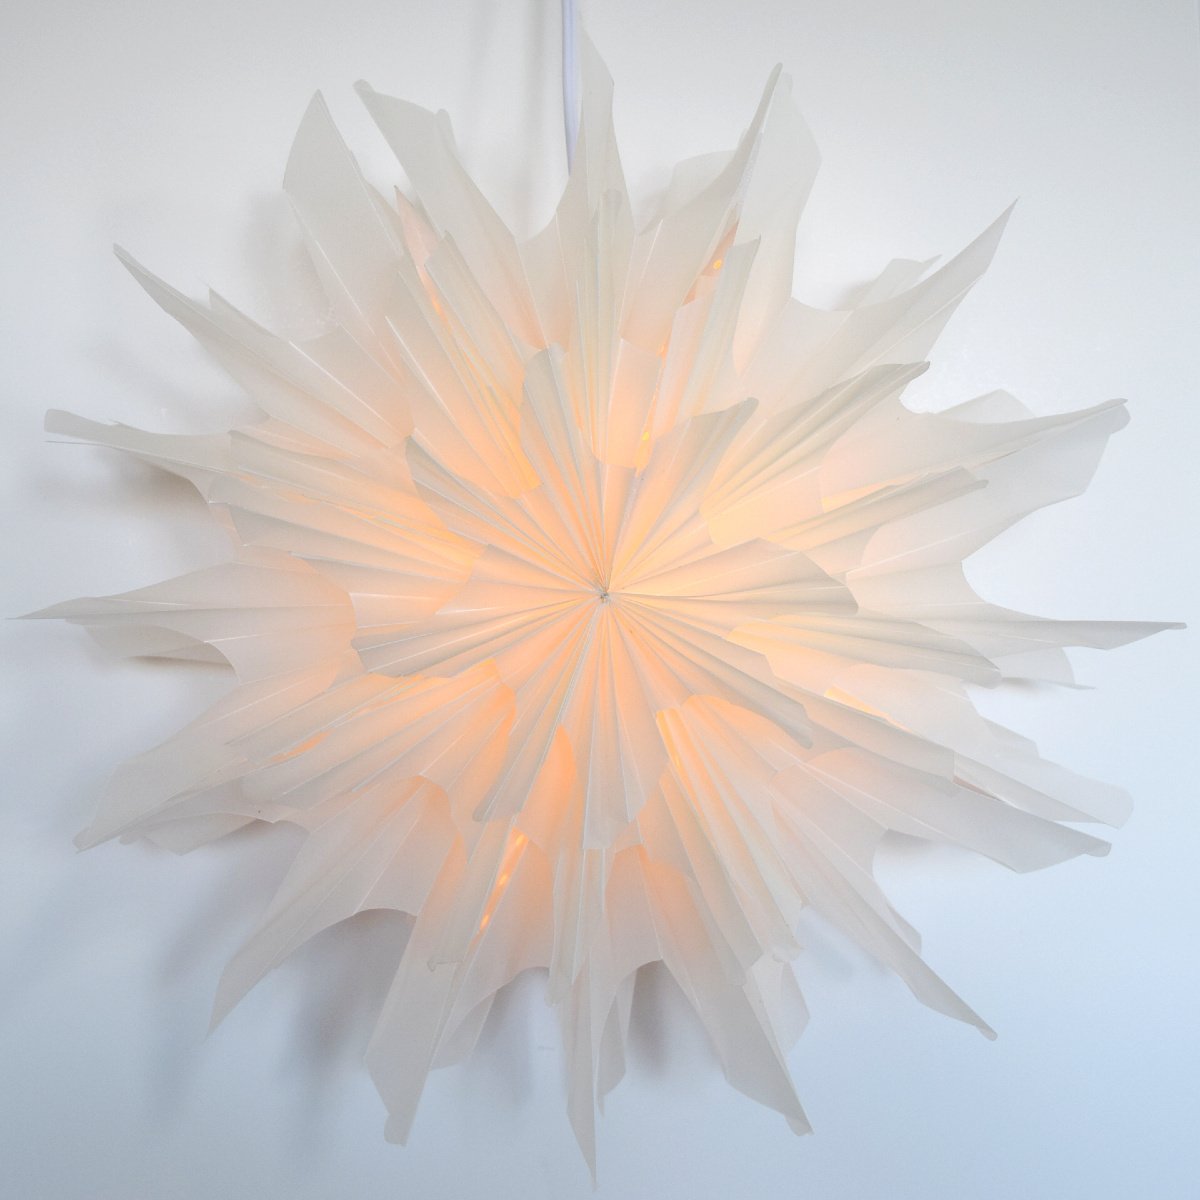 32" White Icicle Snowflake Star Lantern Pizzelle Design